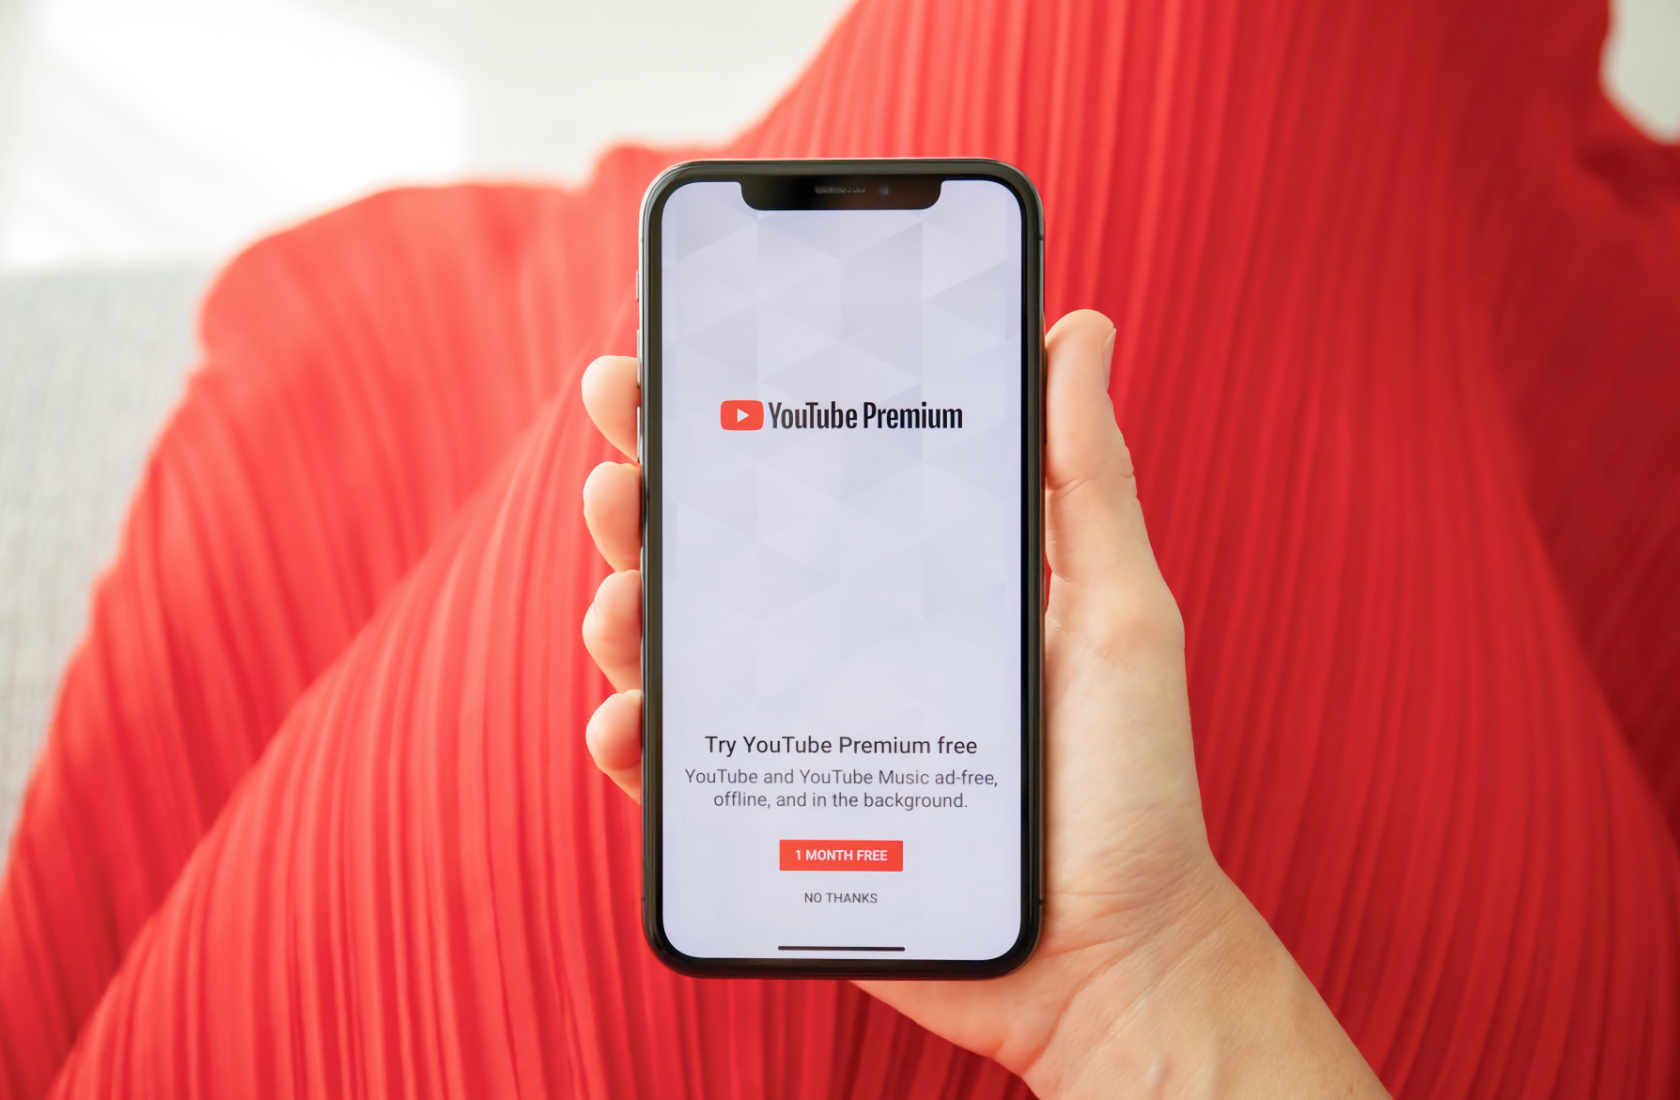 Обладателям подписок YouTube Premium дали доступ к видео с новым уровнем качества